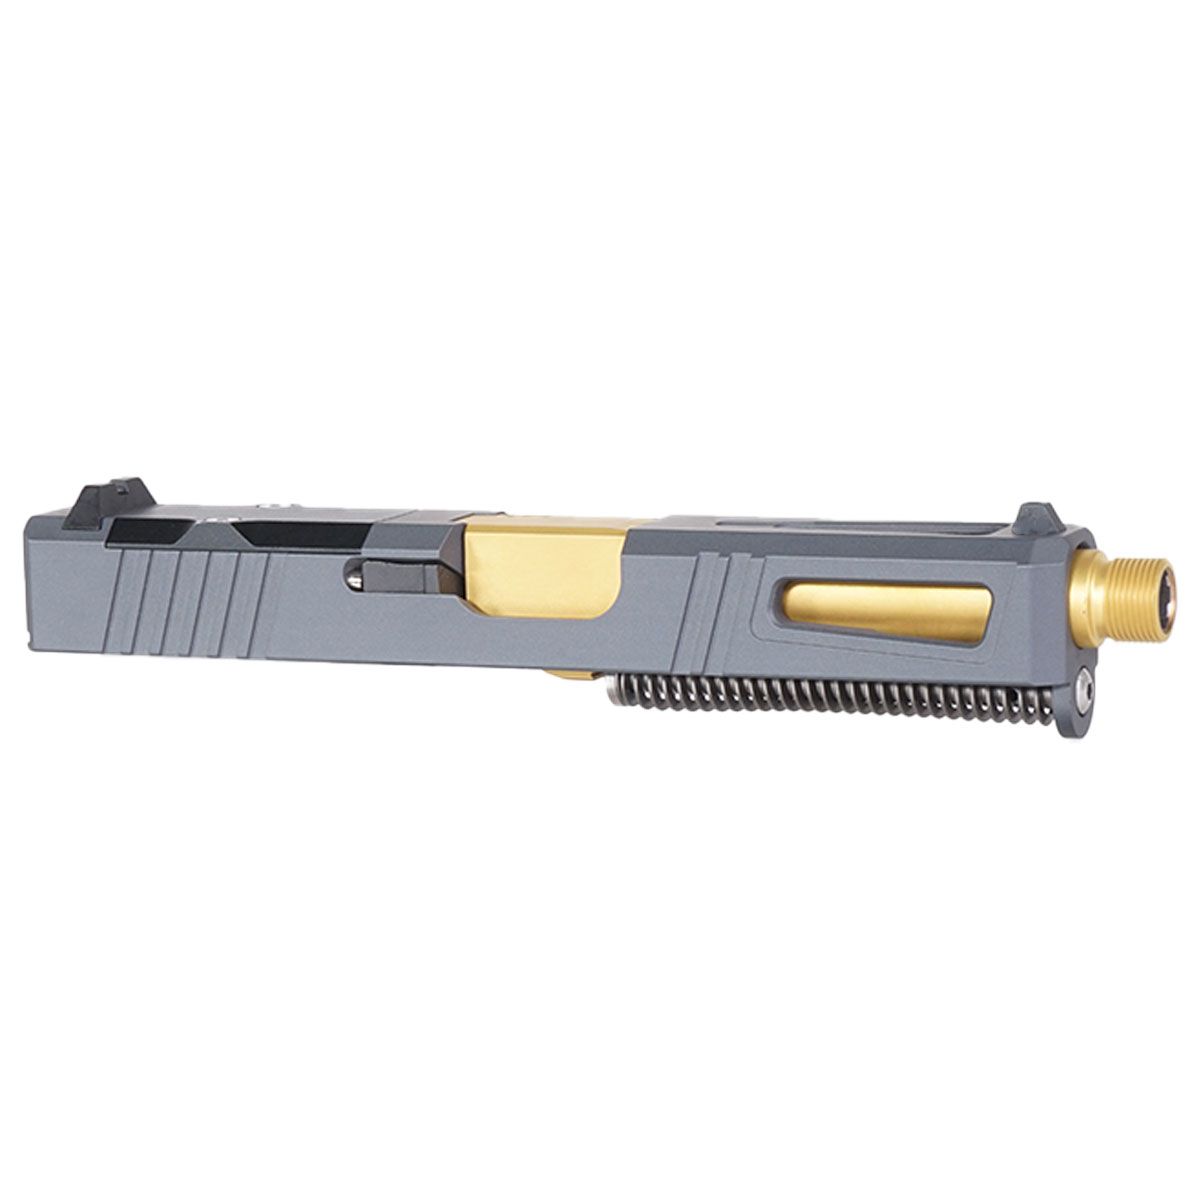 DD 'Gold Strike-Suppressor Ready' 9mm Complete Slide Kit - Glock 19 Gen 1-3 Compatible